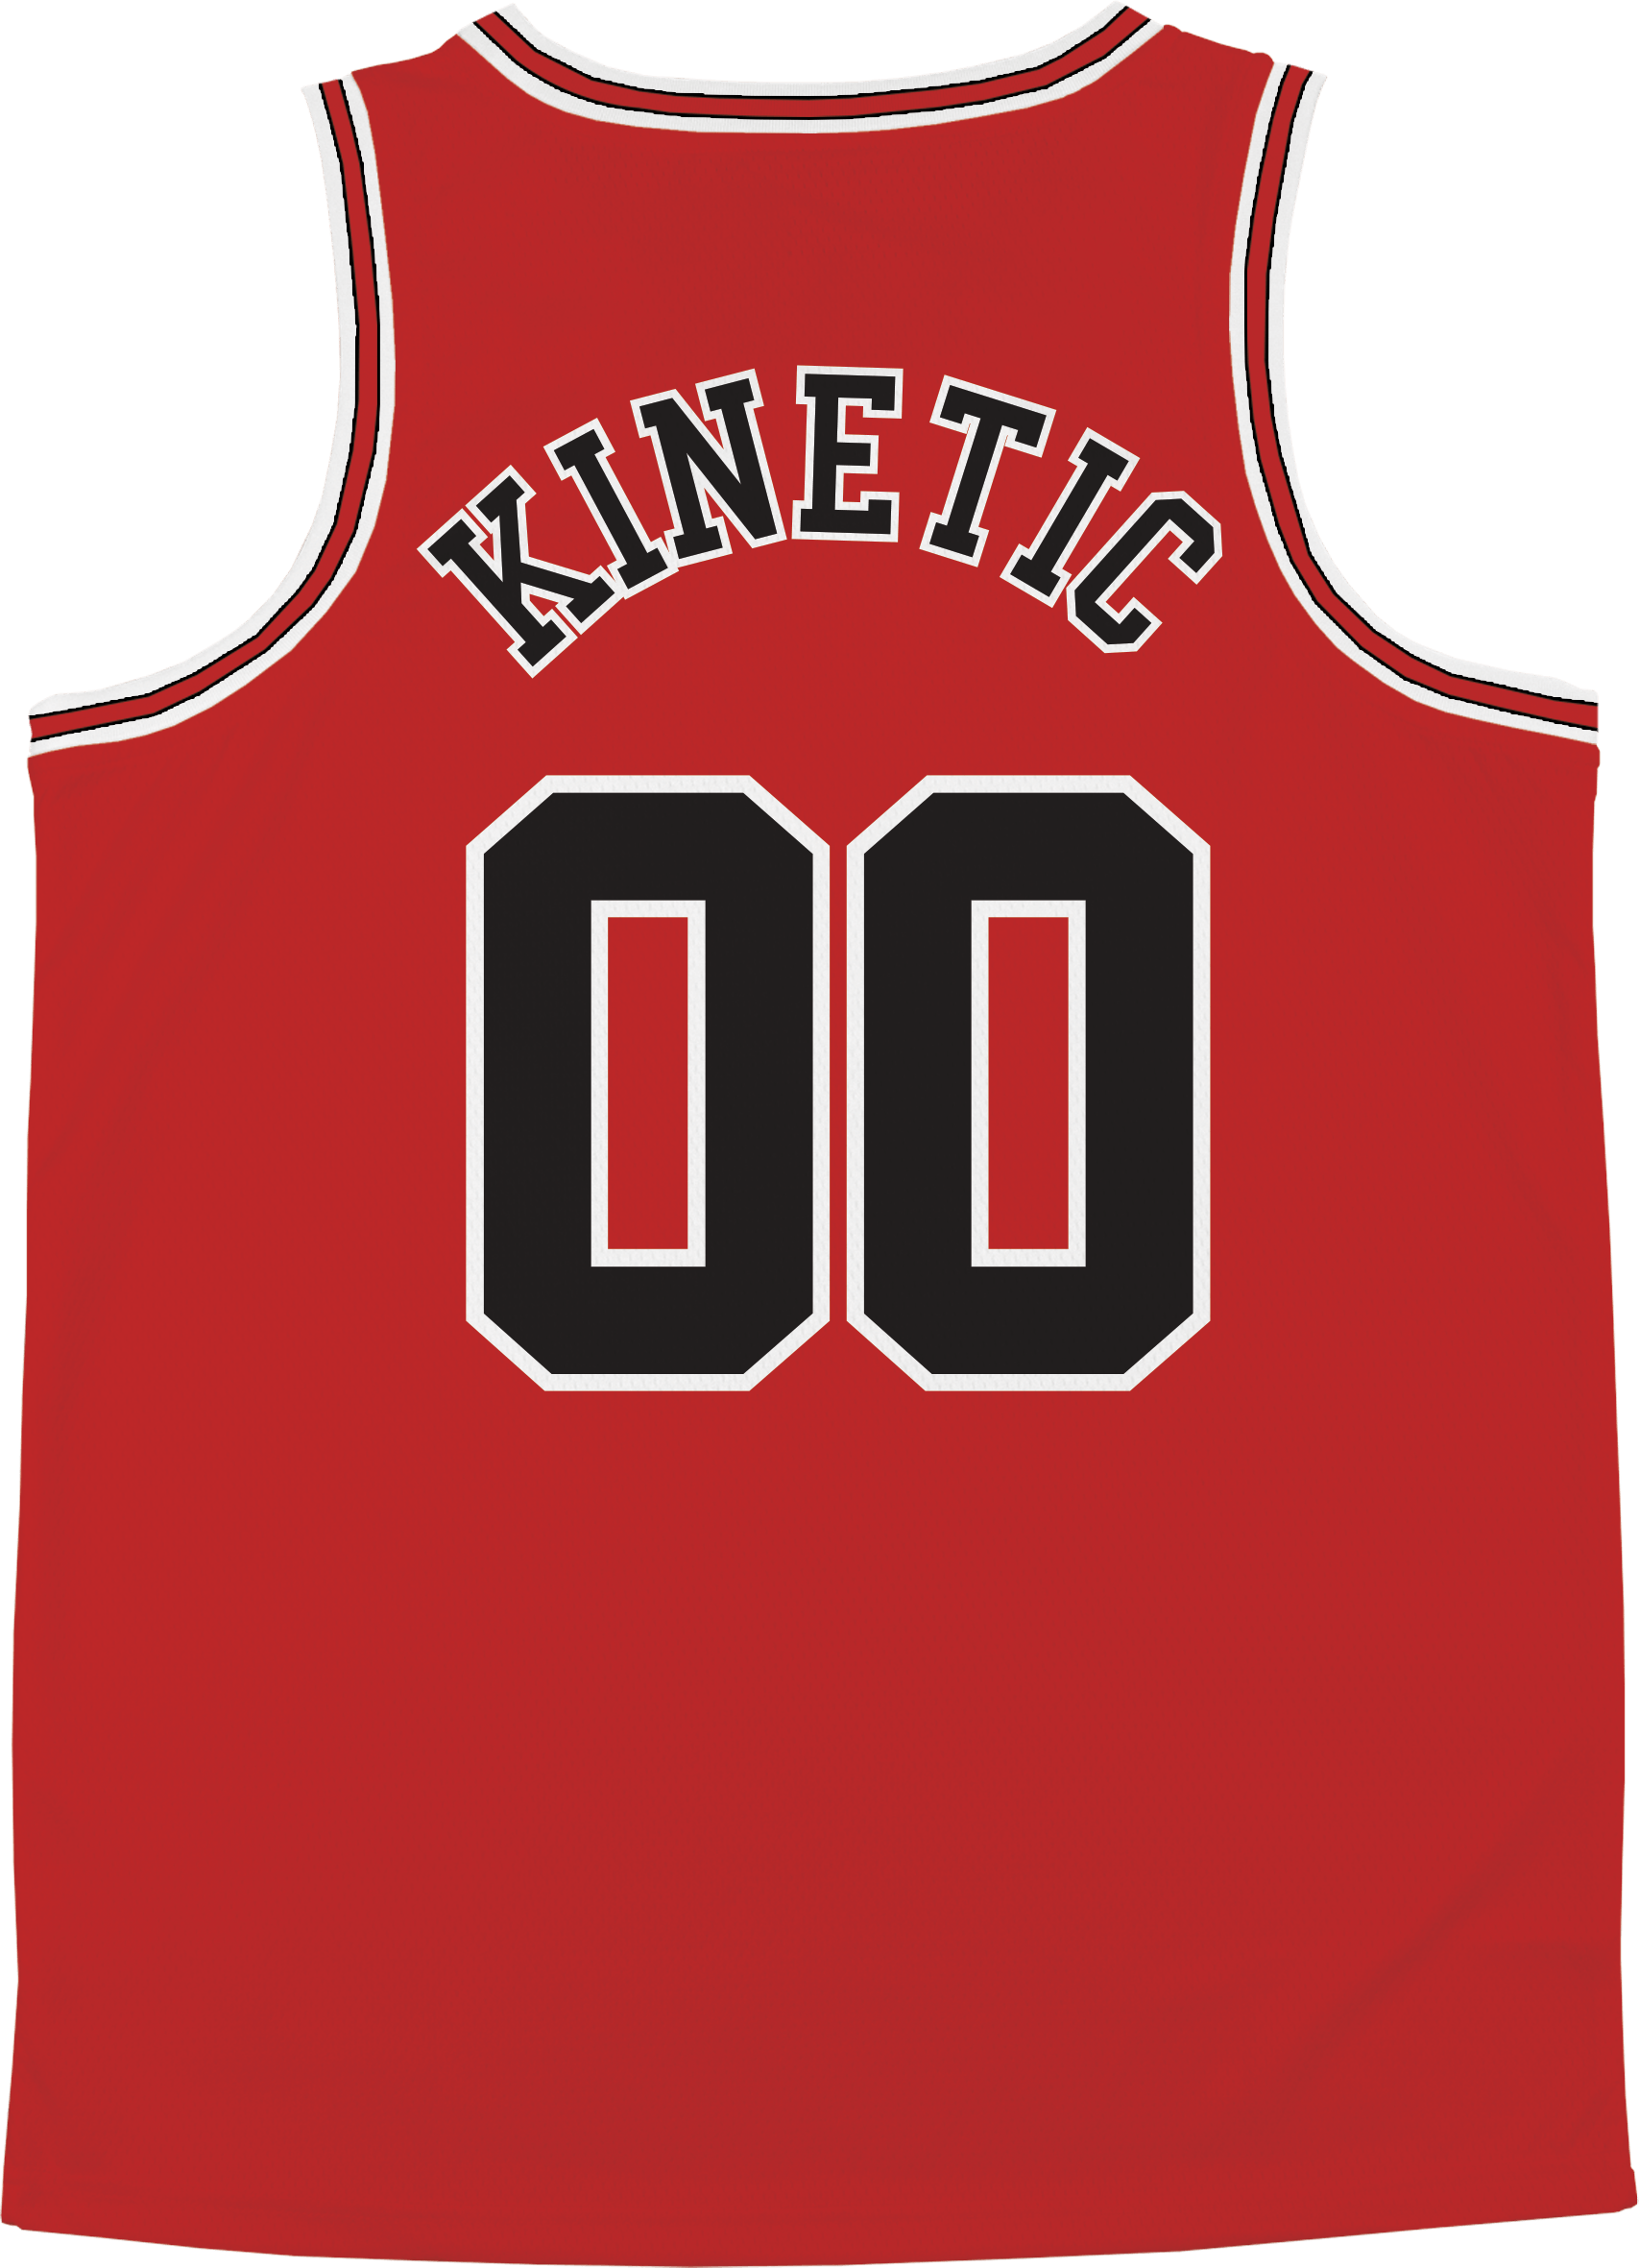 Theta Chi - Big Red Basketball Jersey Premium Basketball Kinetic Society LLC 